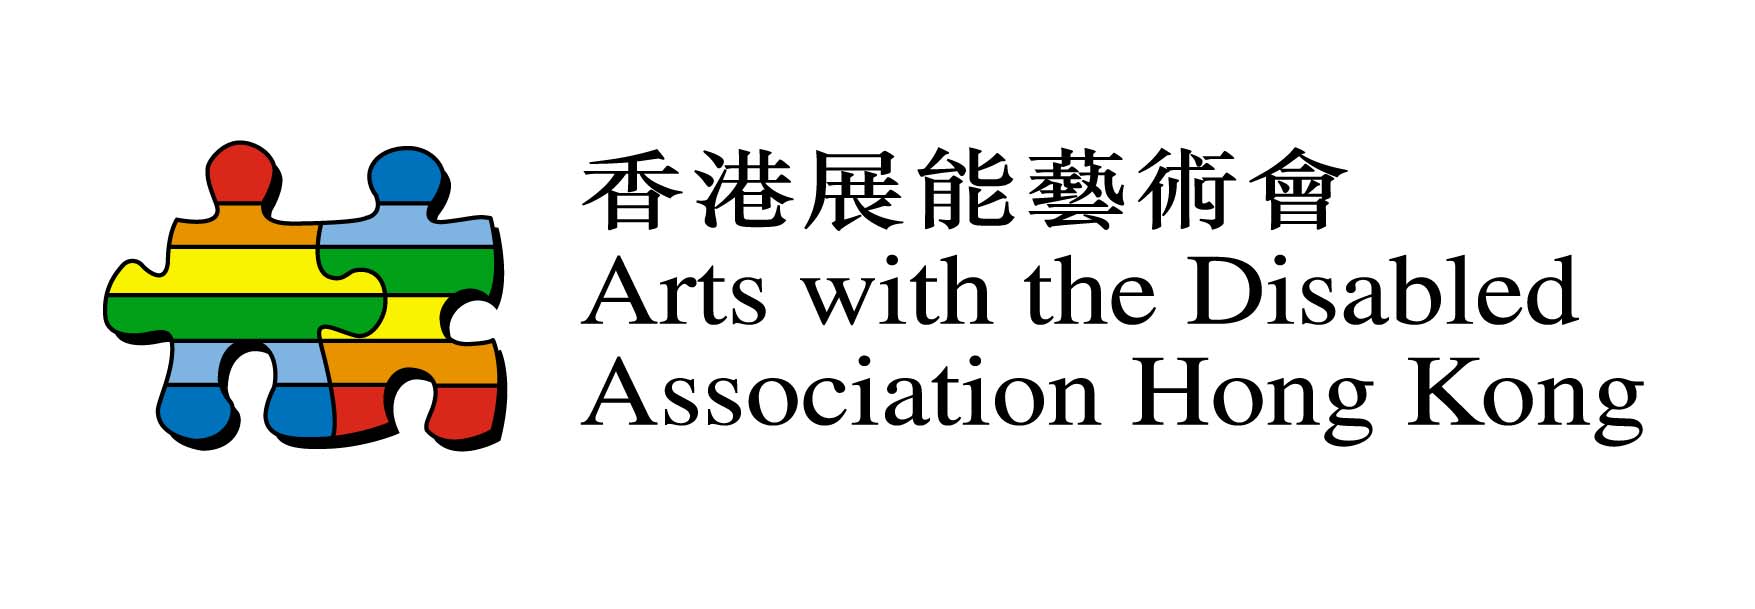 Hong Kong Disabled Arts Association